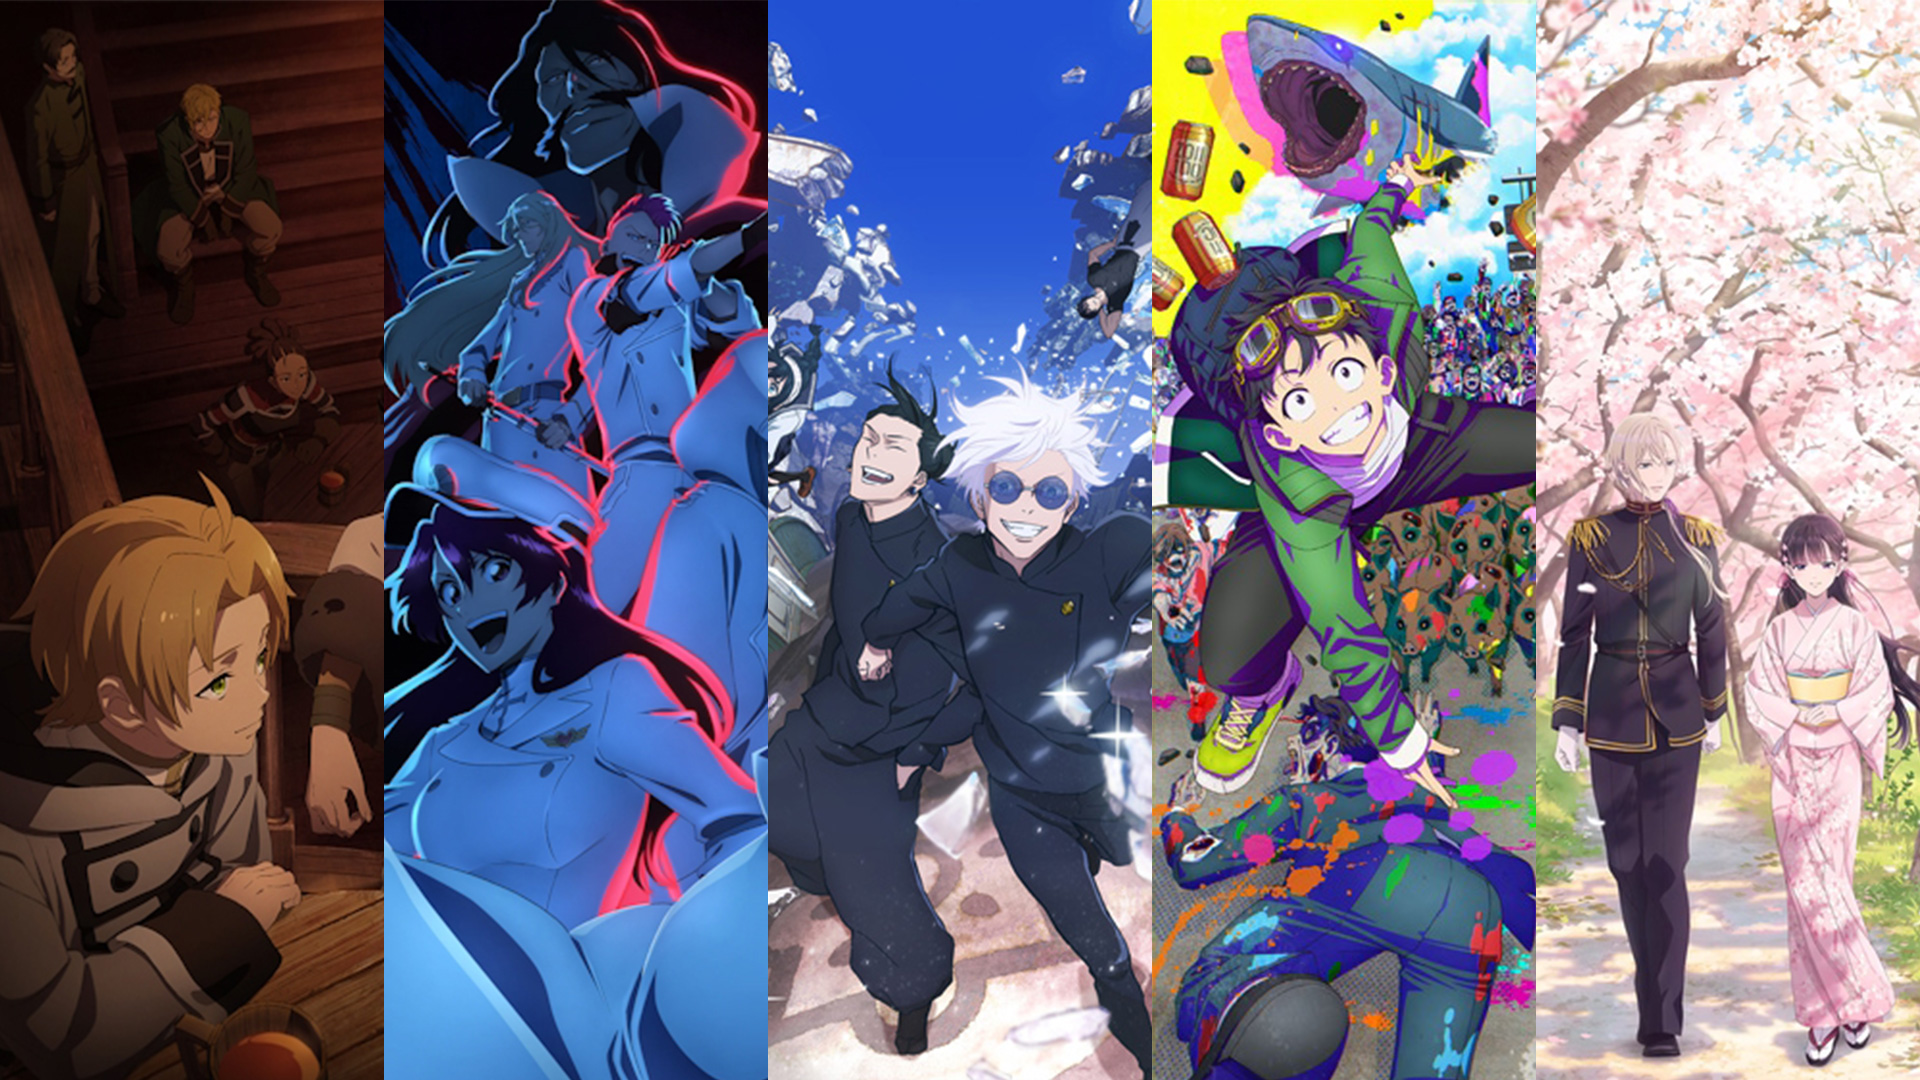 Top 10 Melhores Animes de Romance para Assistir em 2023